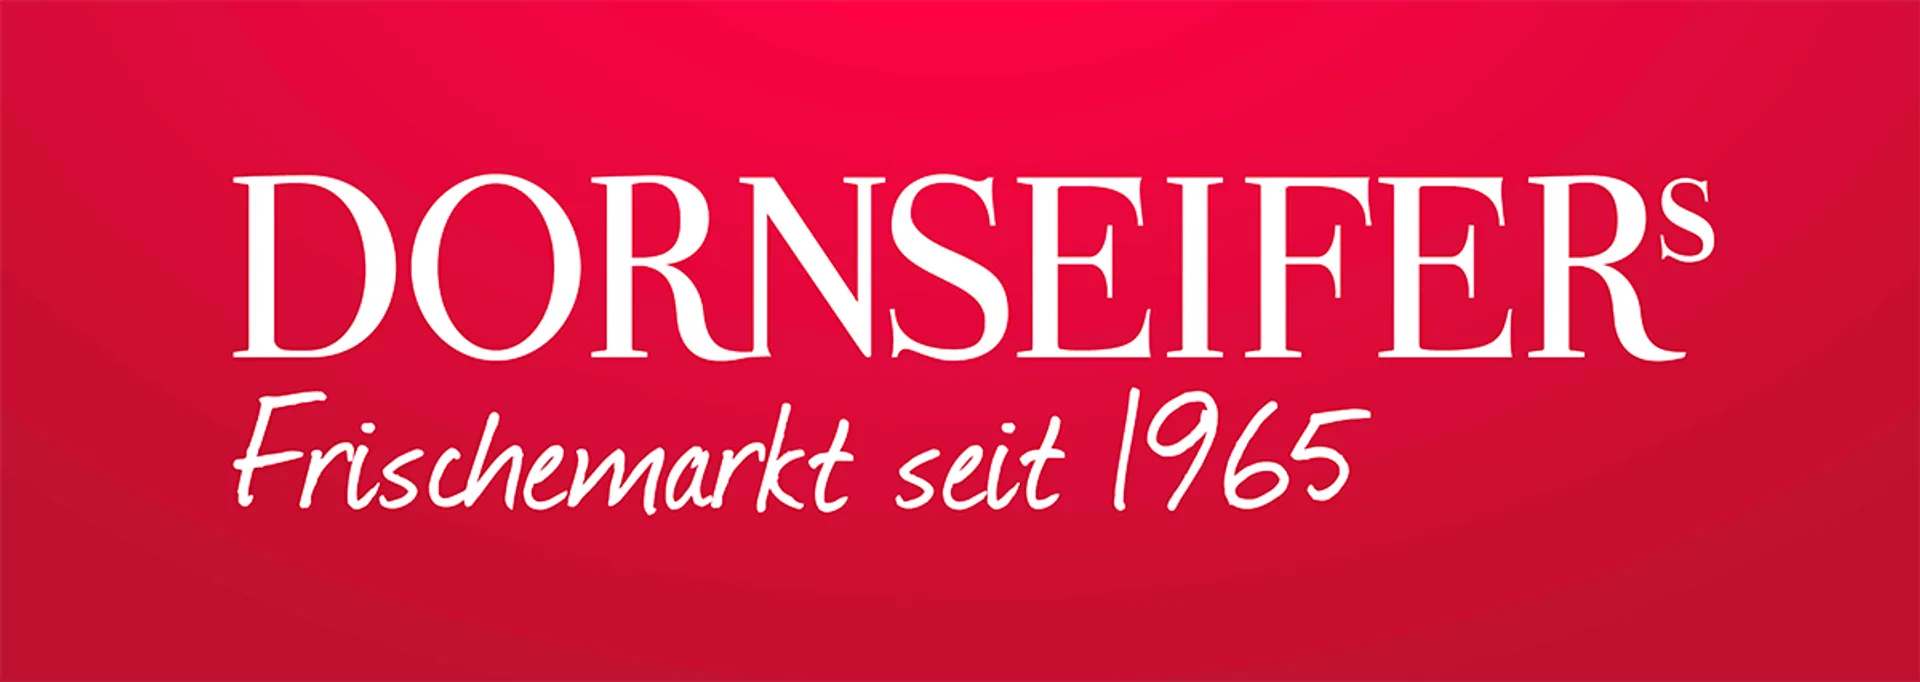 DORNSEIFER logo